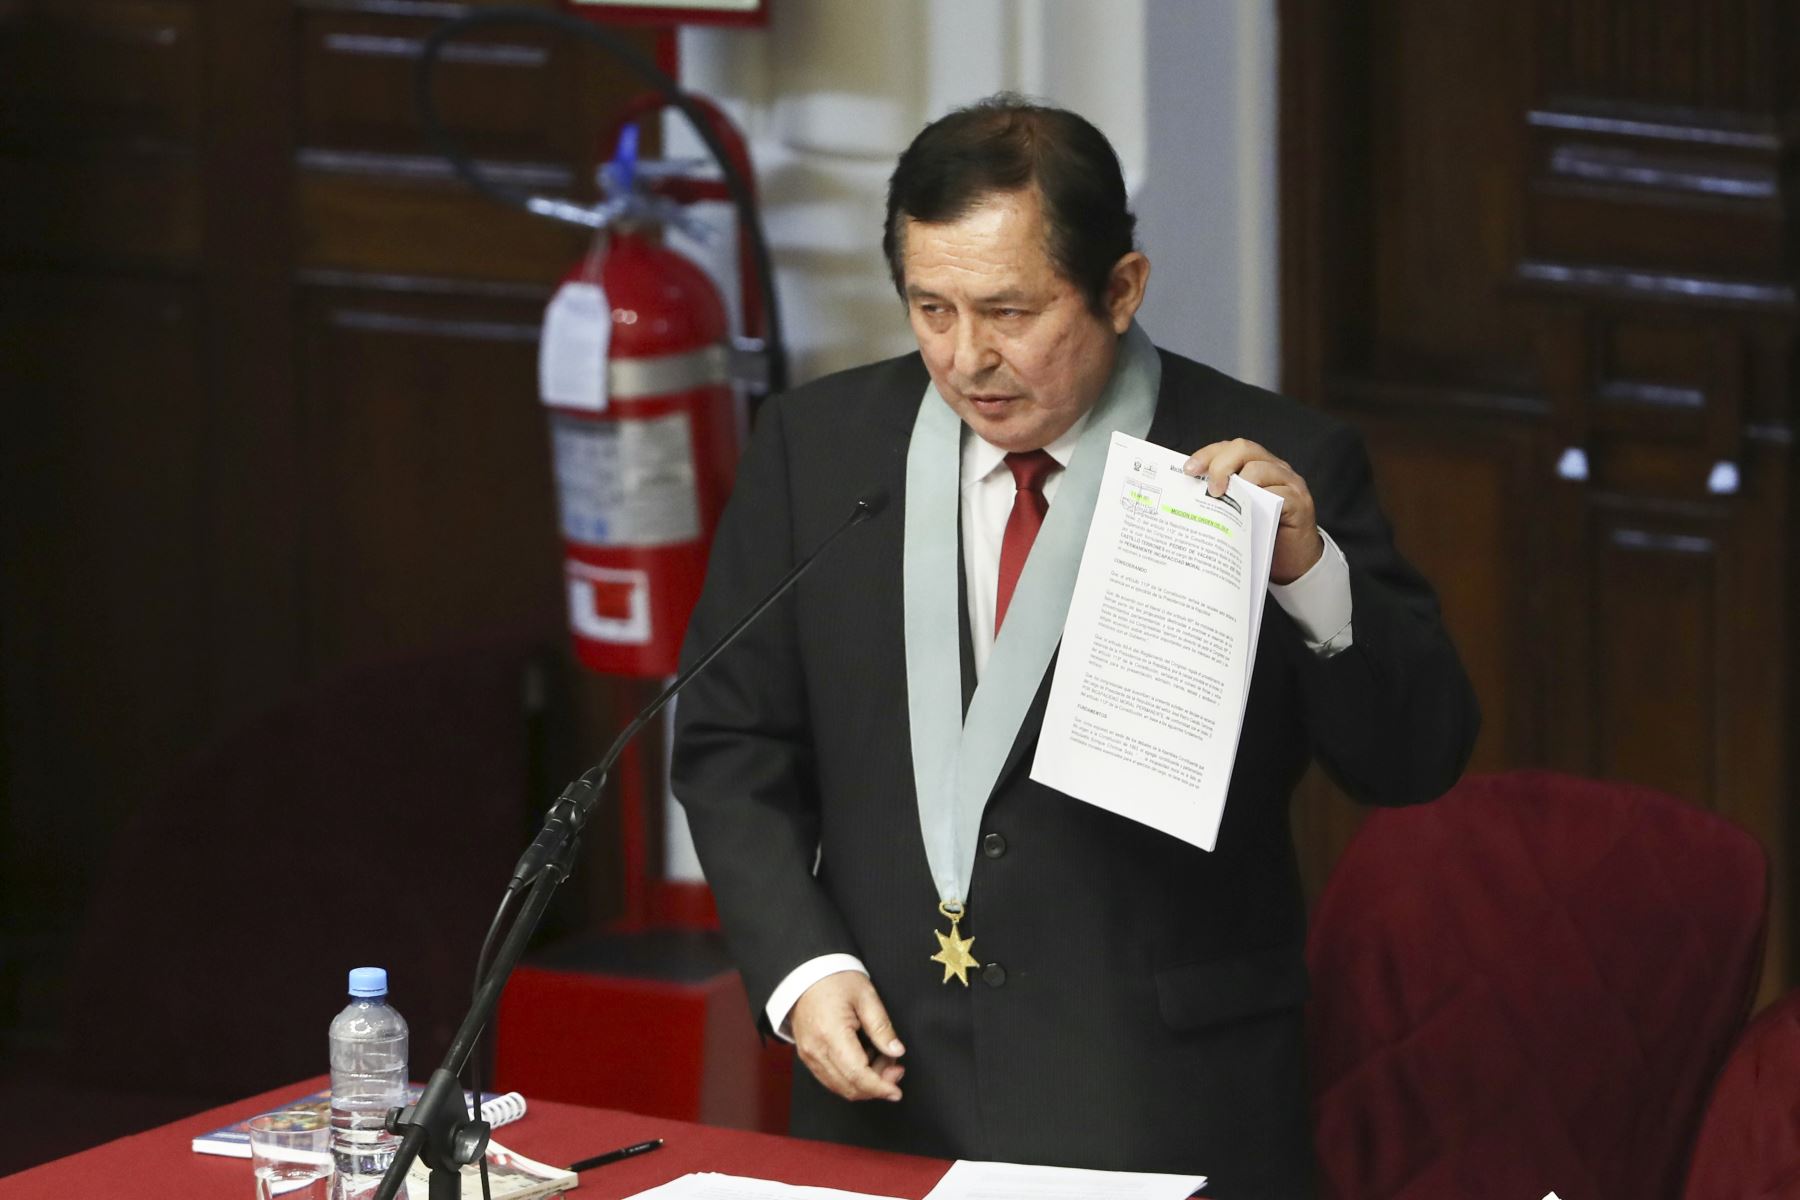 Abogado, José Palomino Manchego, sustenta defensa legal del Presidente de la República ante el pedido de vacancia. Foto: Congreso